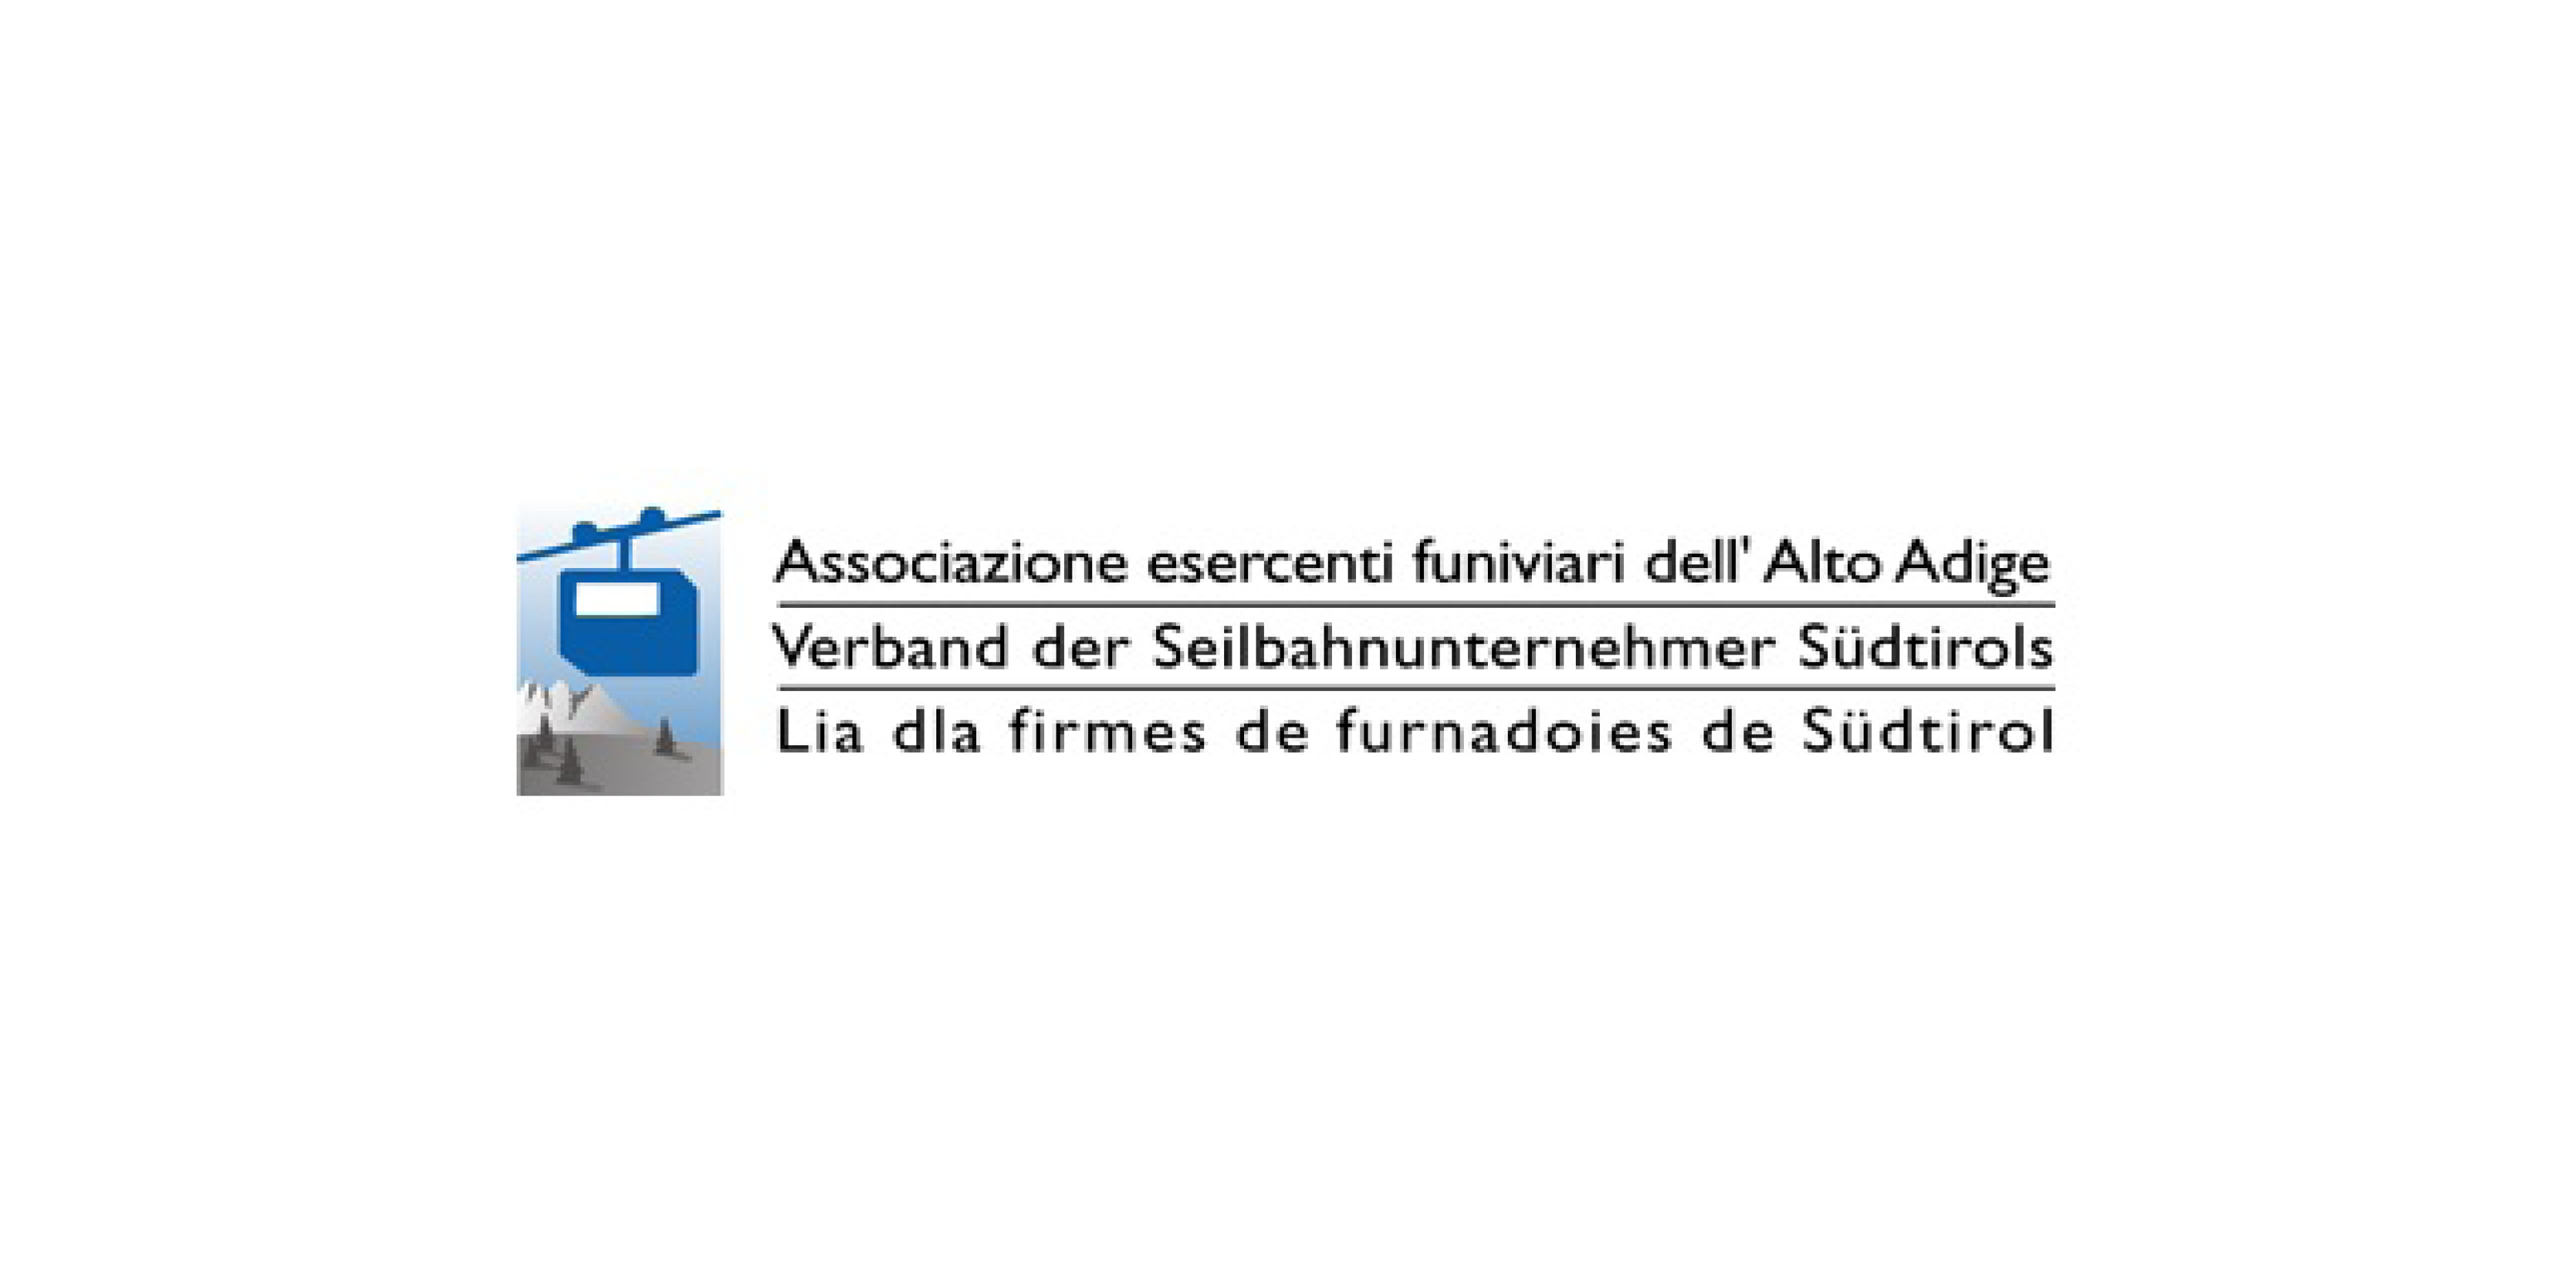 Verband der Seilbahnunternehmer Südtirols